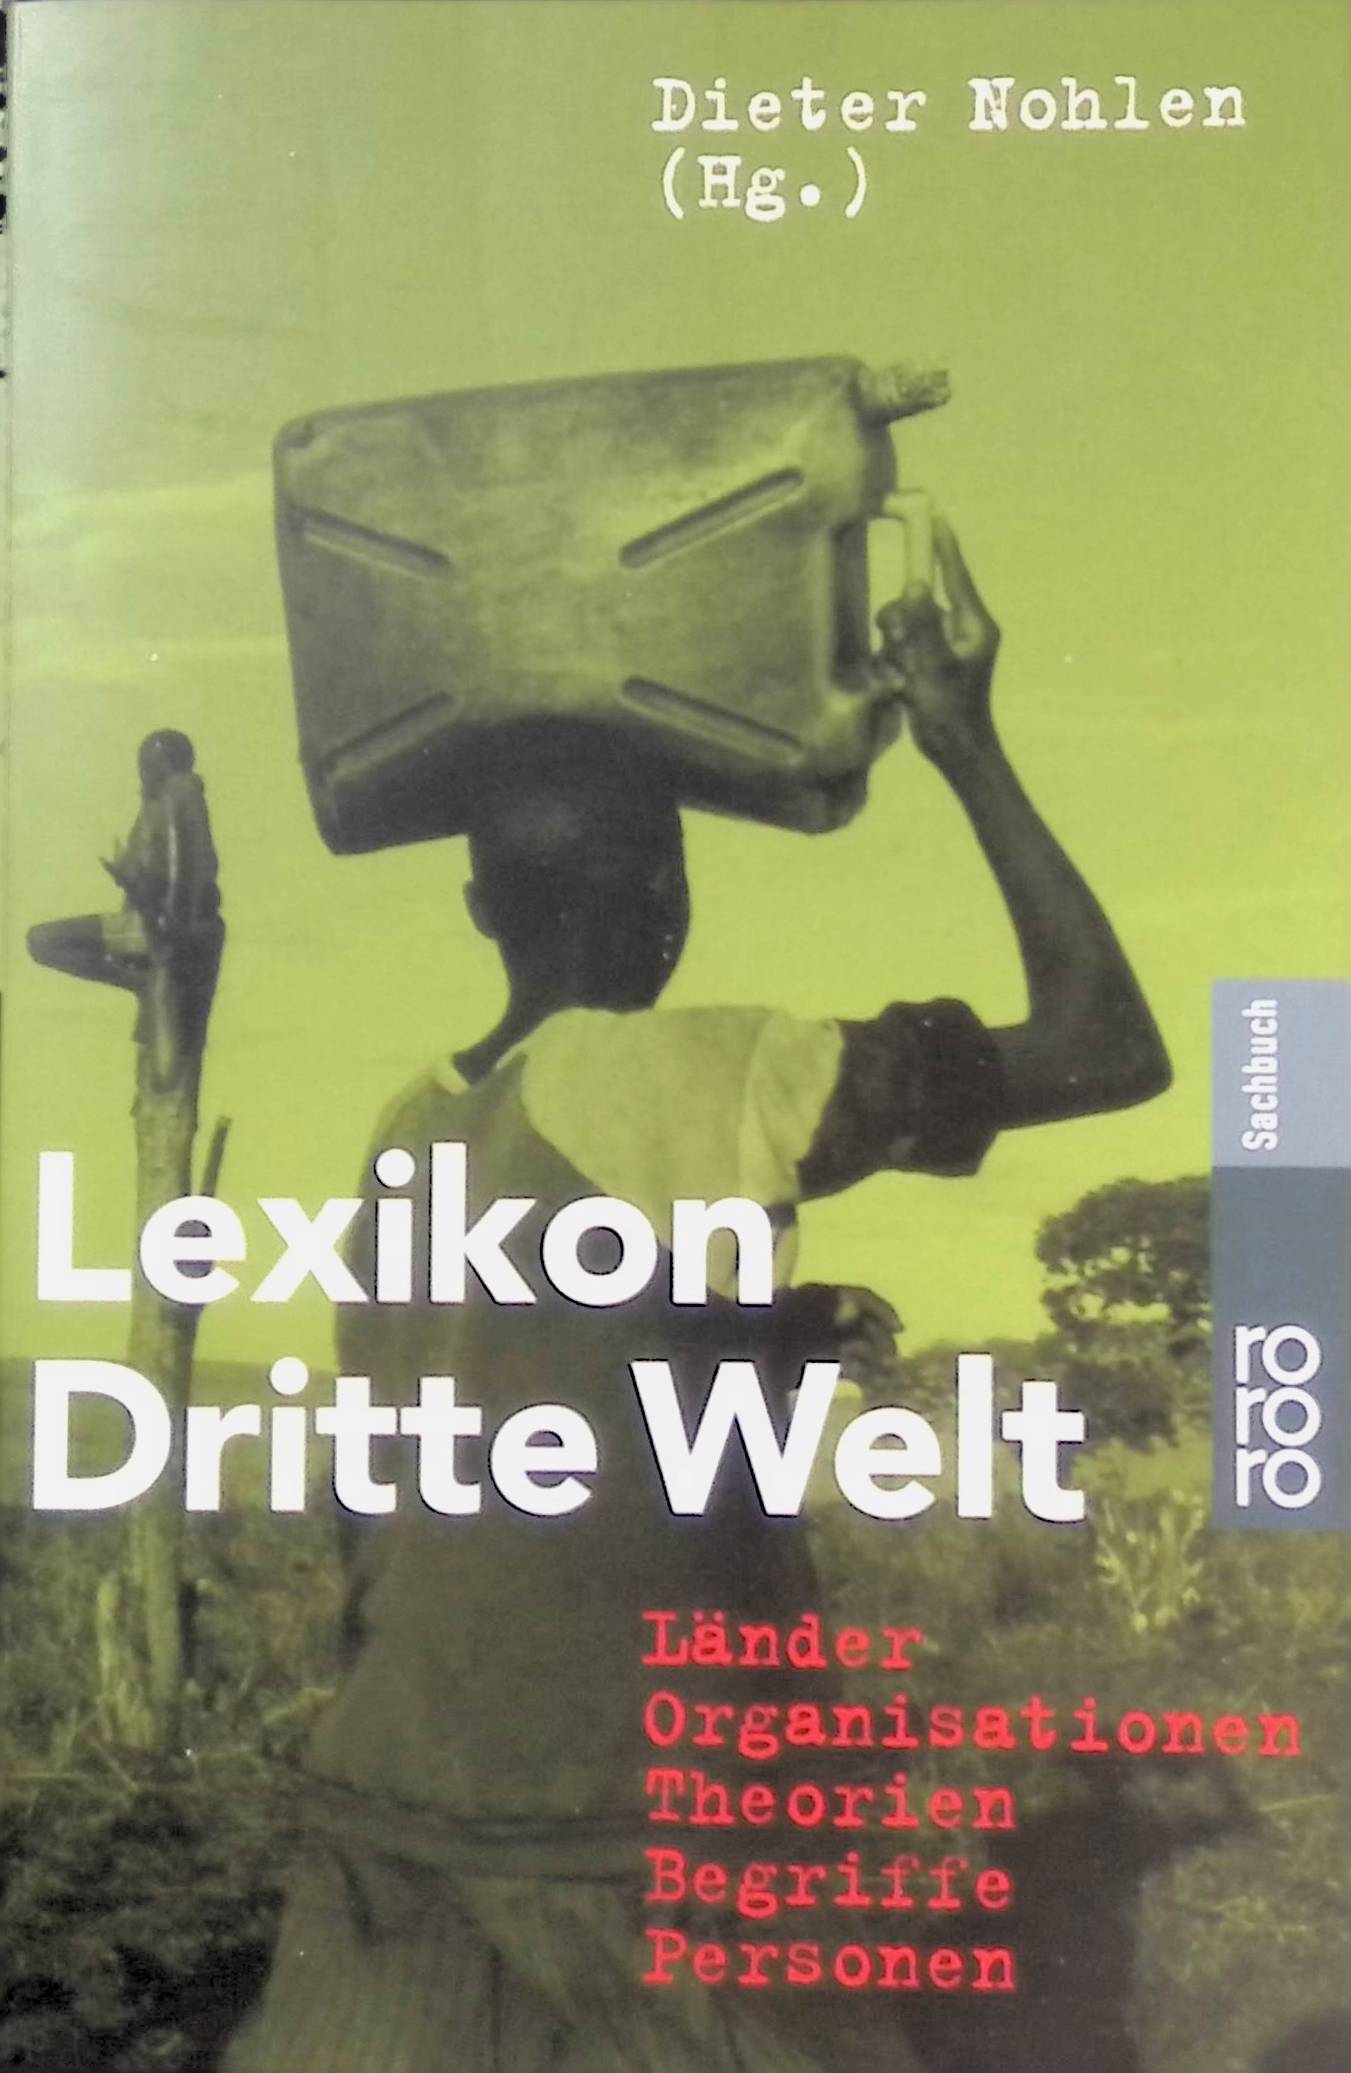 Lexikon dritte Welt. Nr. 60684, - Nohlen, Dieter [Hrsg.]